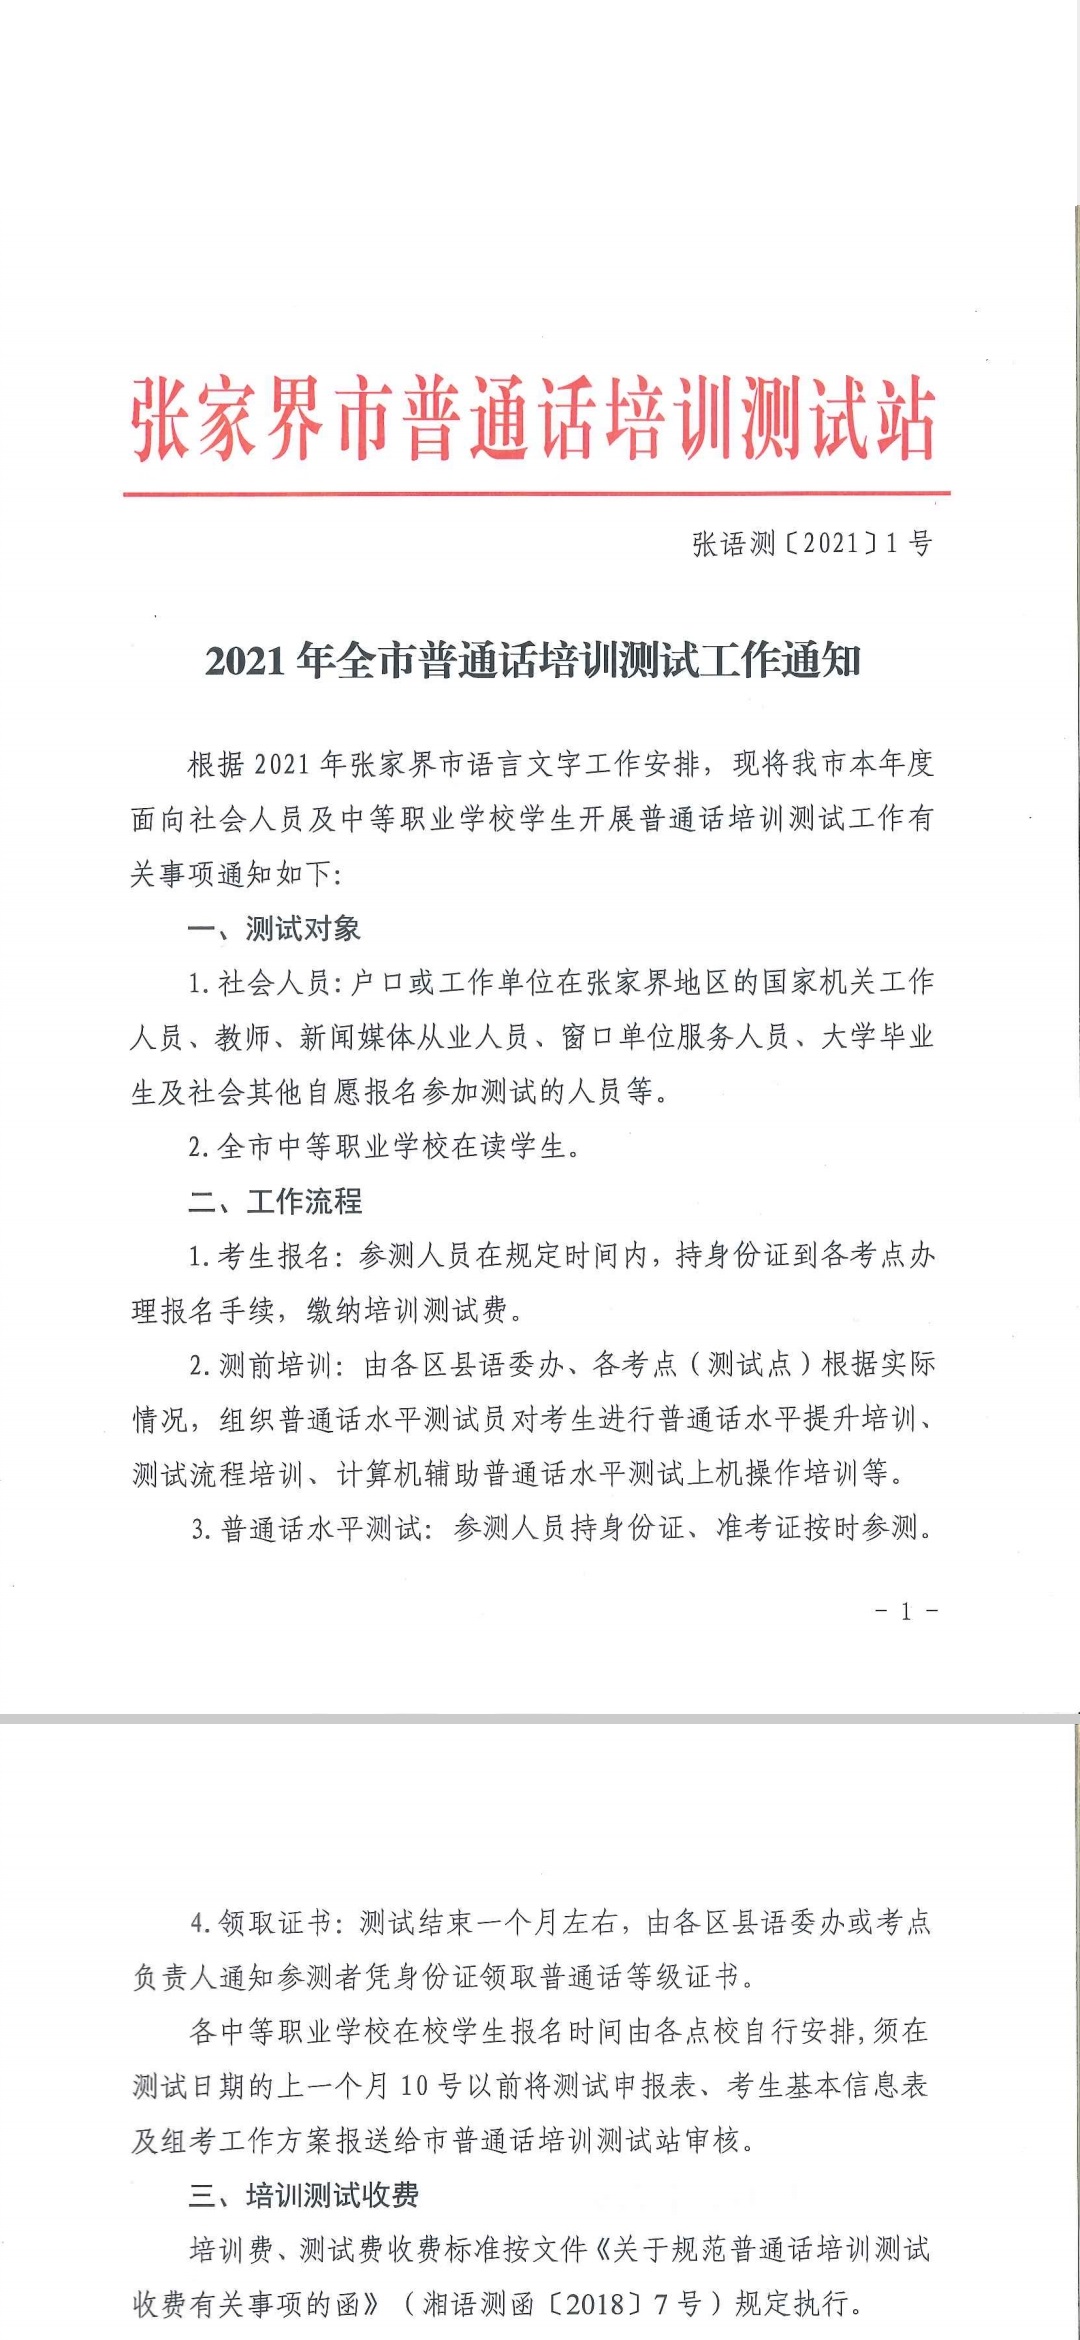 湖南张家界市2021年全市普通话培训测试安排